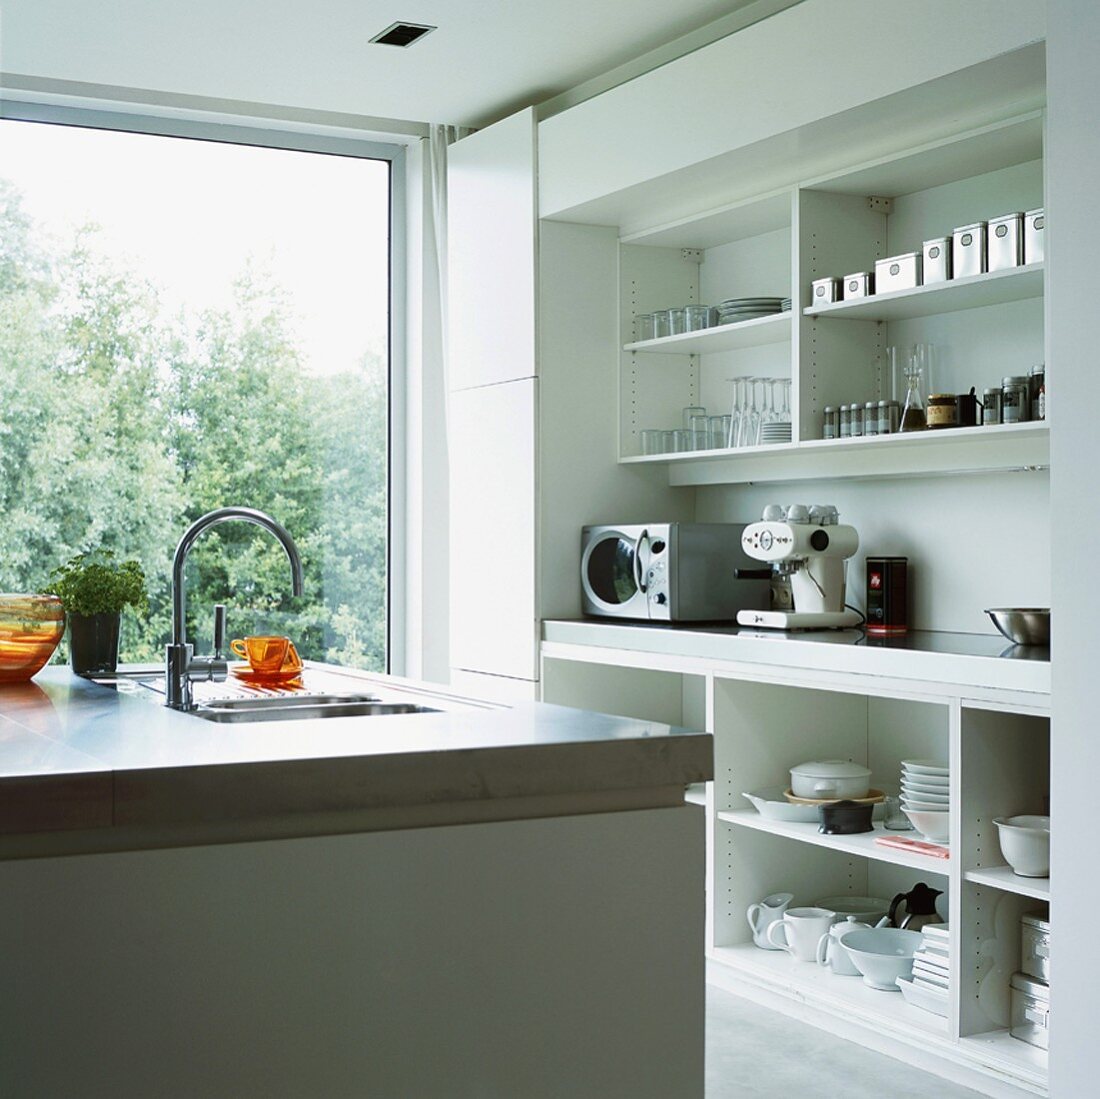 Durch das raumhohe Panoramafenster fällt viel Tageslicht in die moderne, weiße Küche